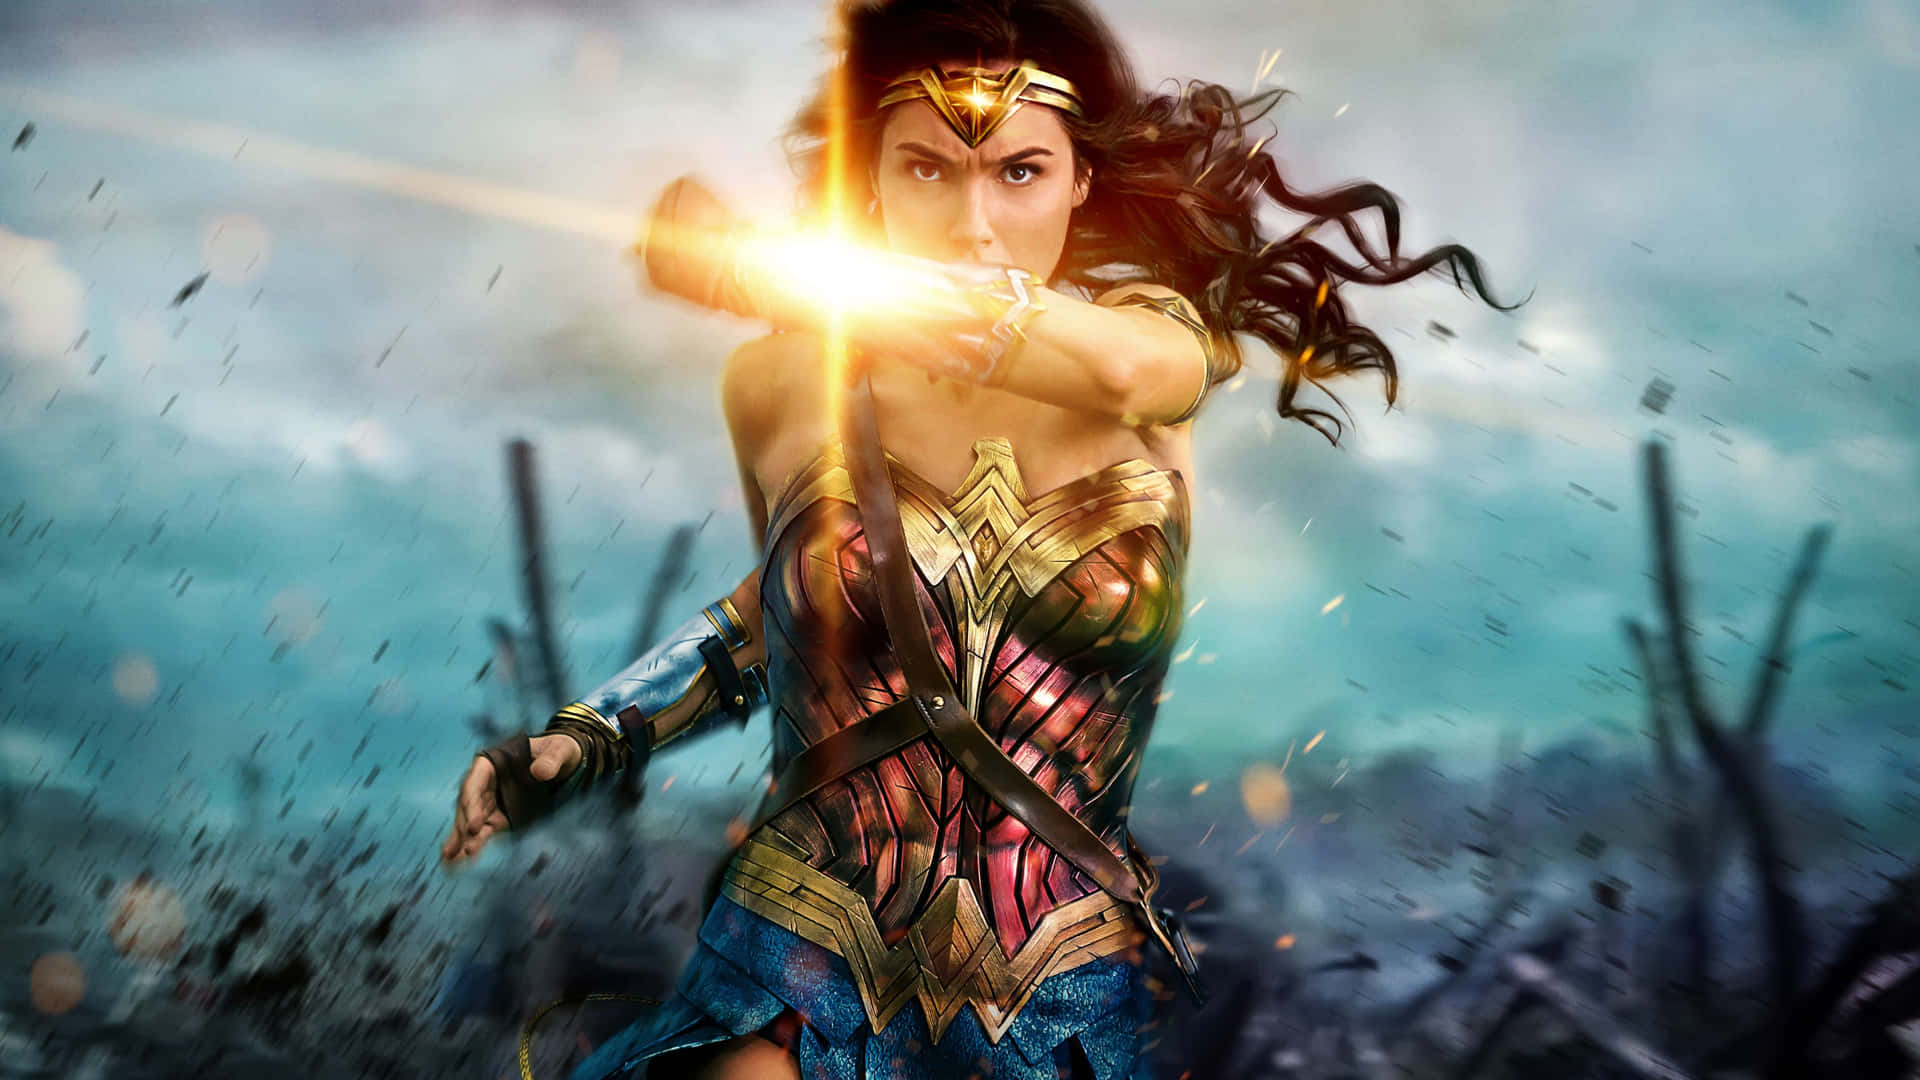 Action Wonder Woman Dc Comics Background